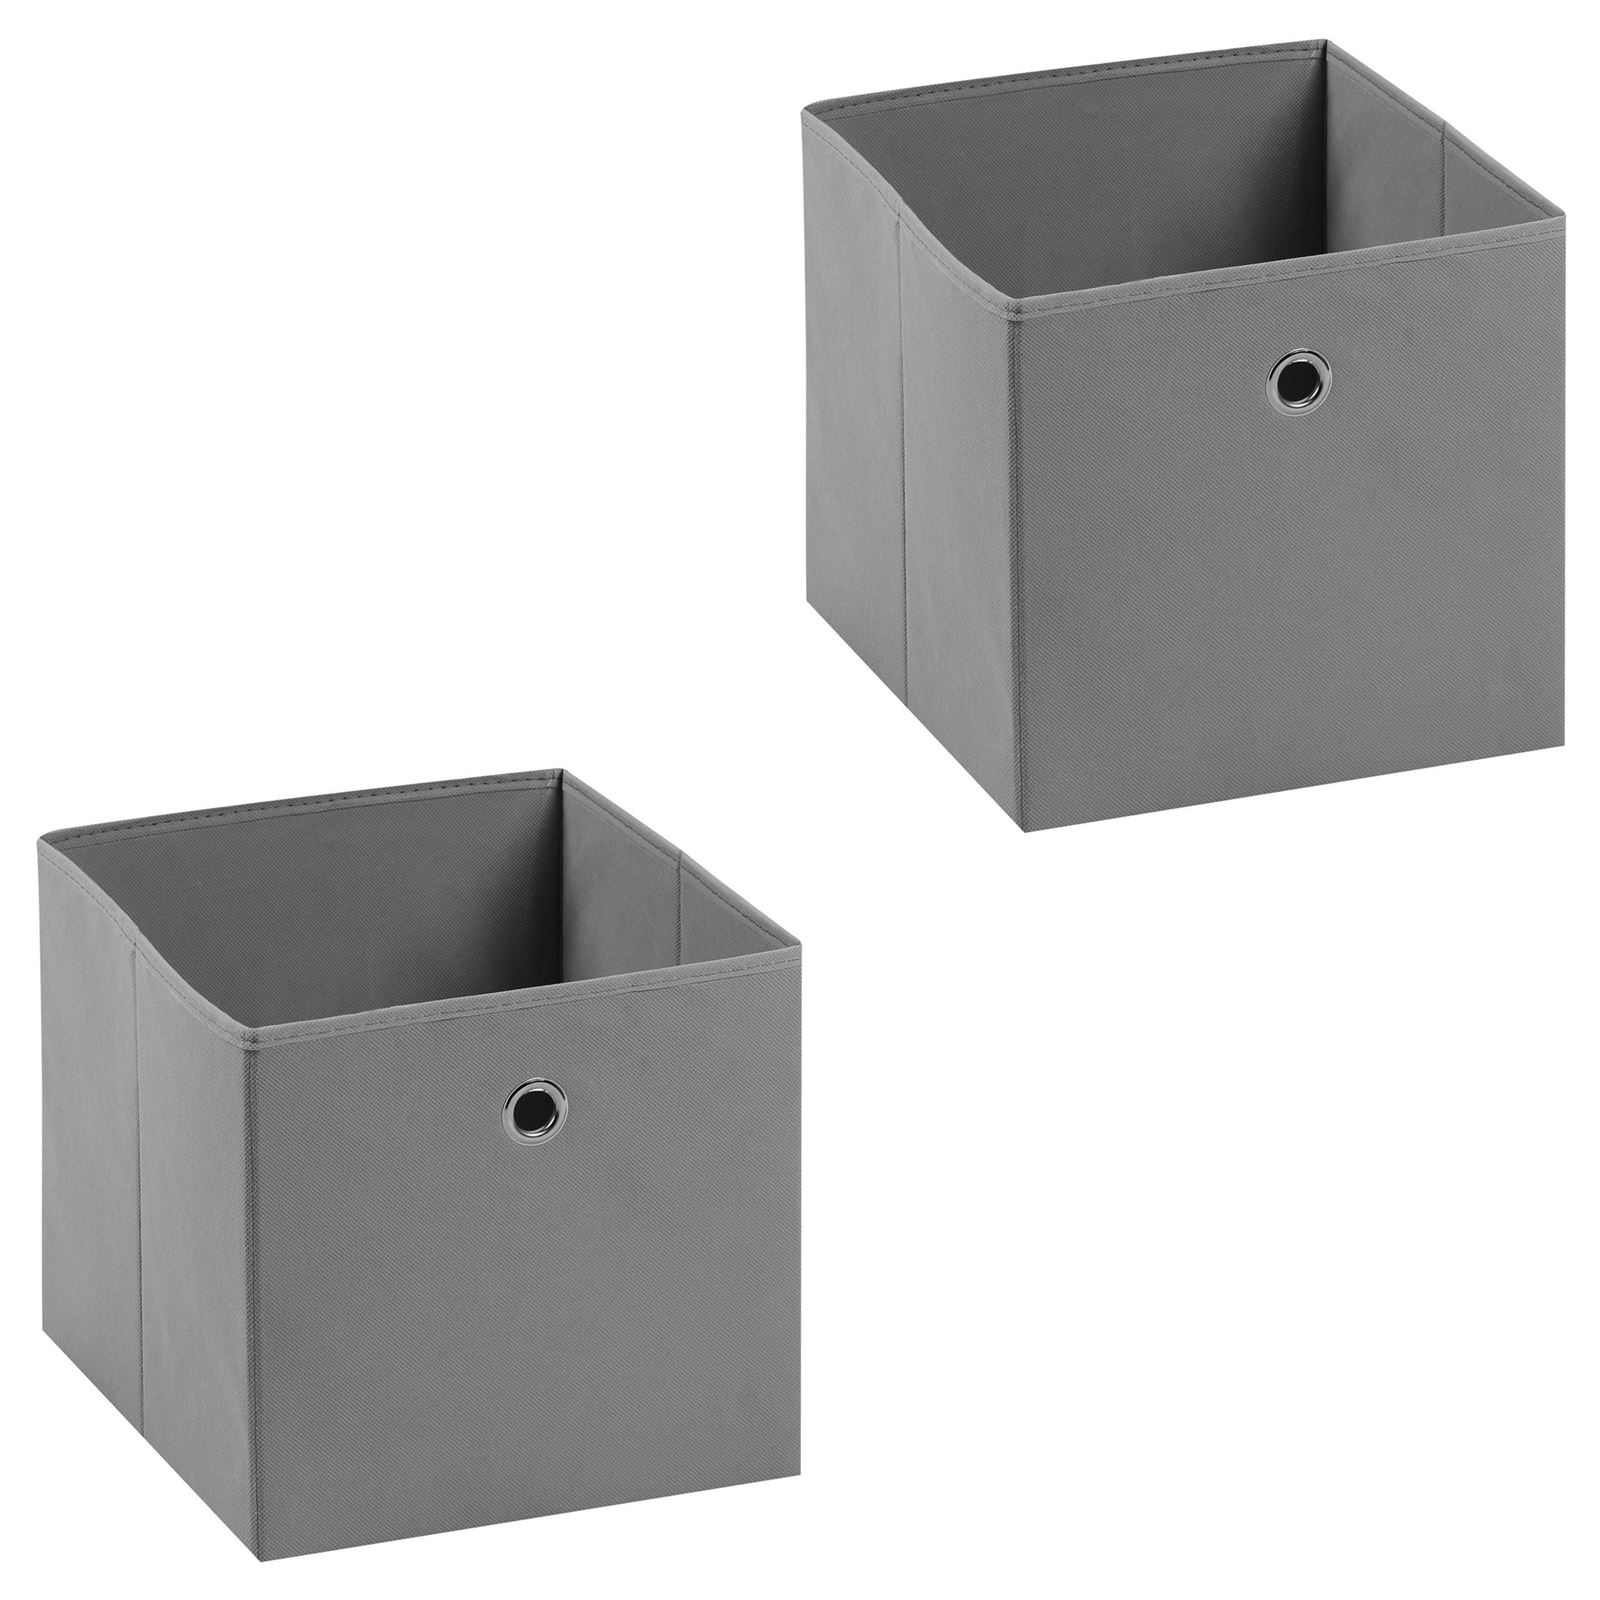 IDIMEX Lot de 2 boites en tissu gris ELA boîte de rangement ouverte avec  poignée dim 27 x 27 x 27 cm, pour linge jouets vêtements pas cher 